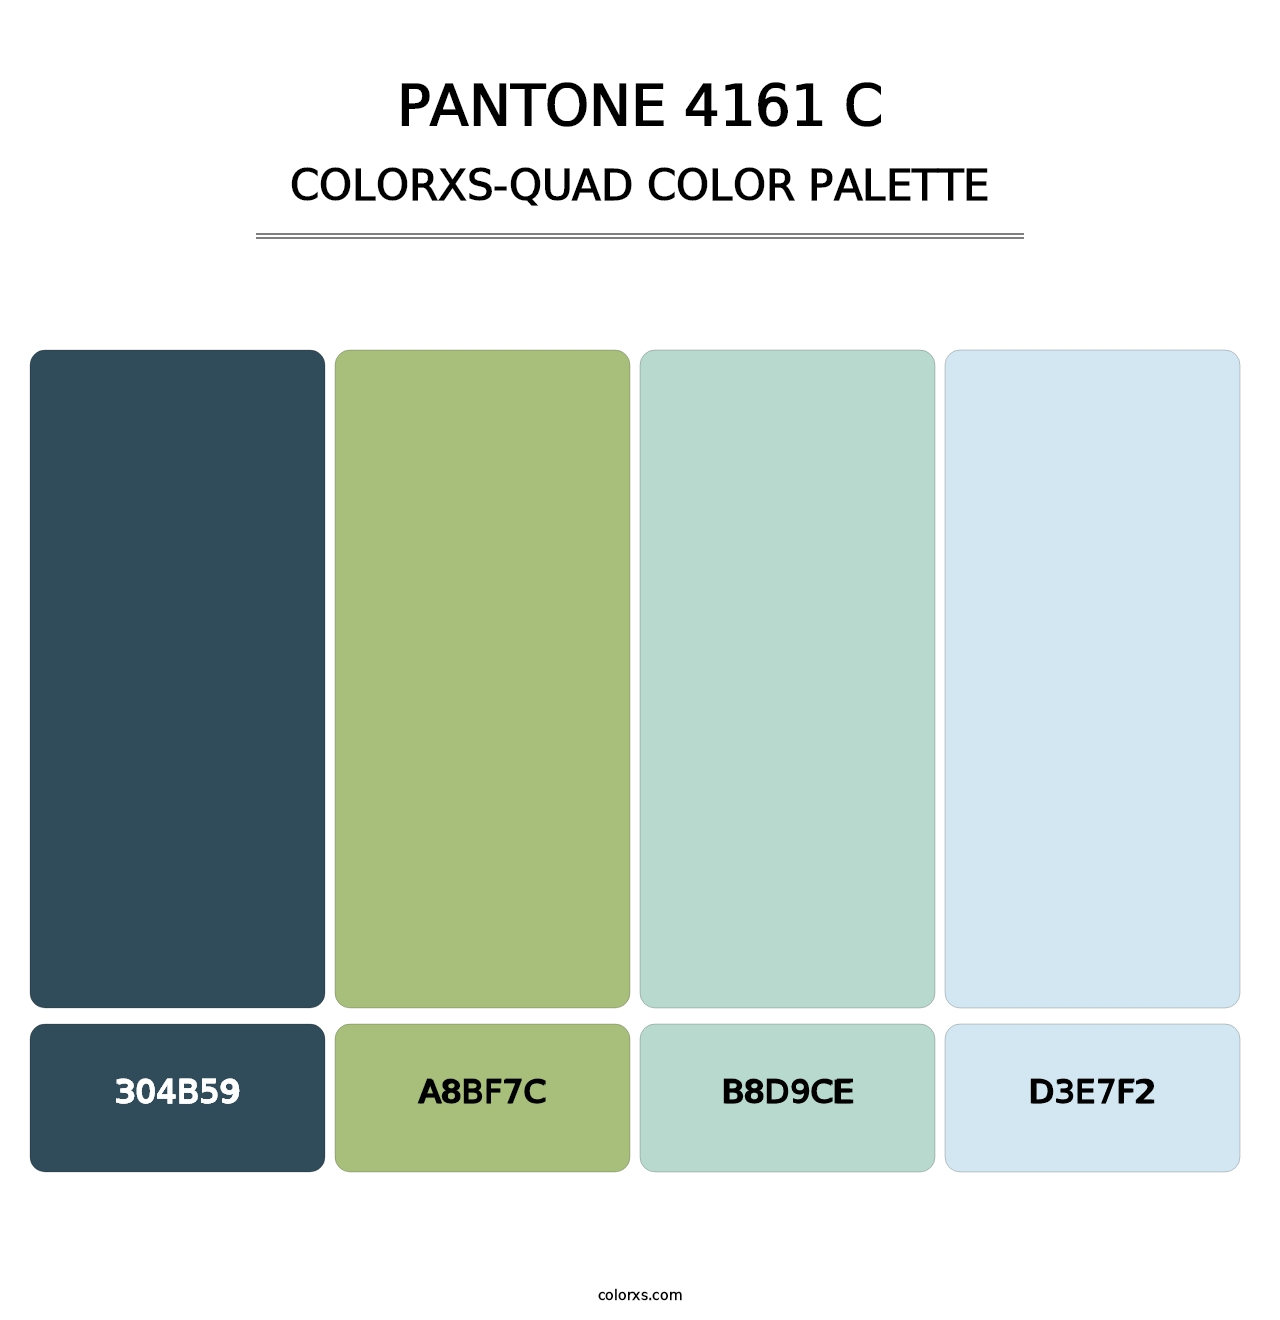 PANTONE 4161 C - Colorxs Quad Palette